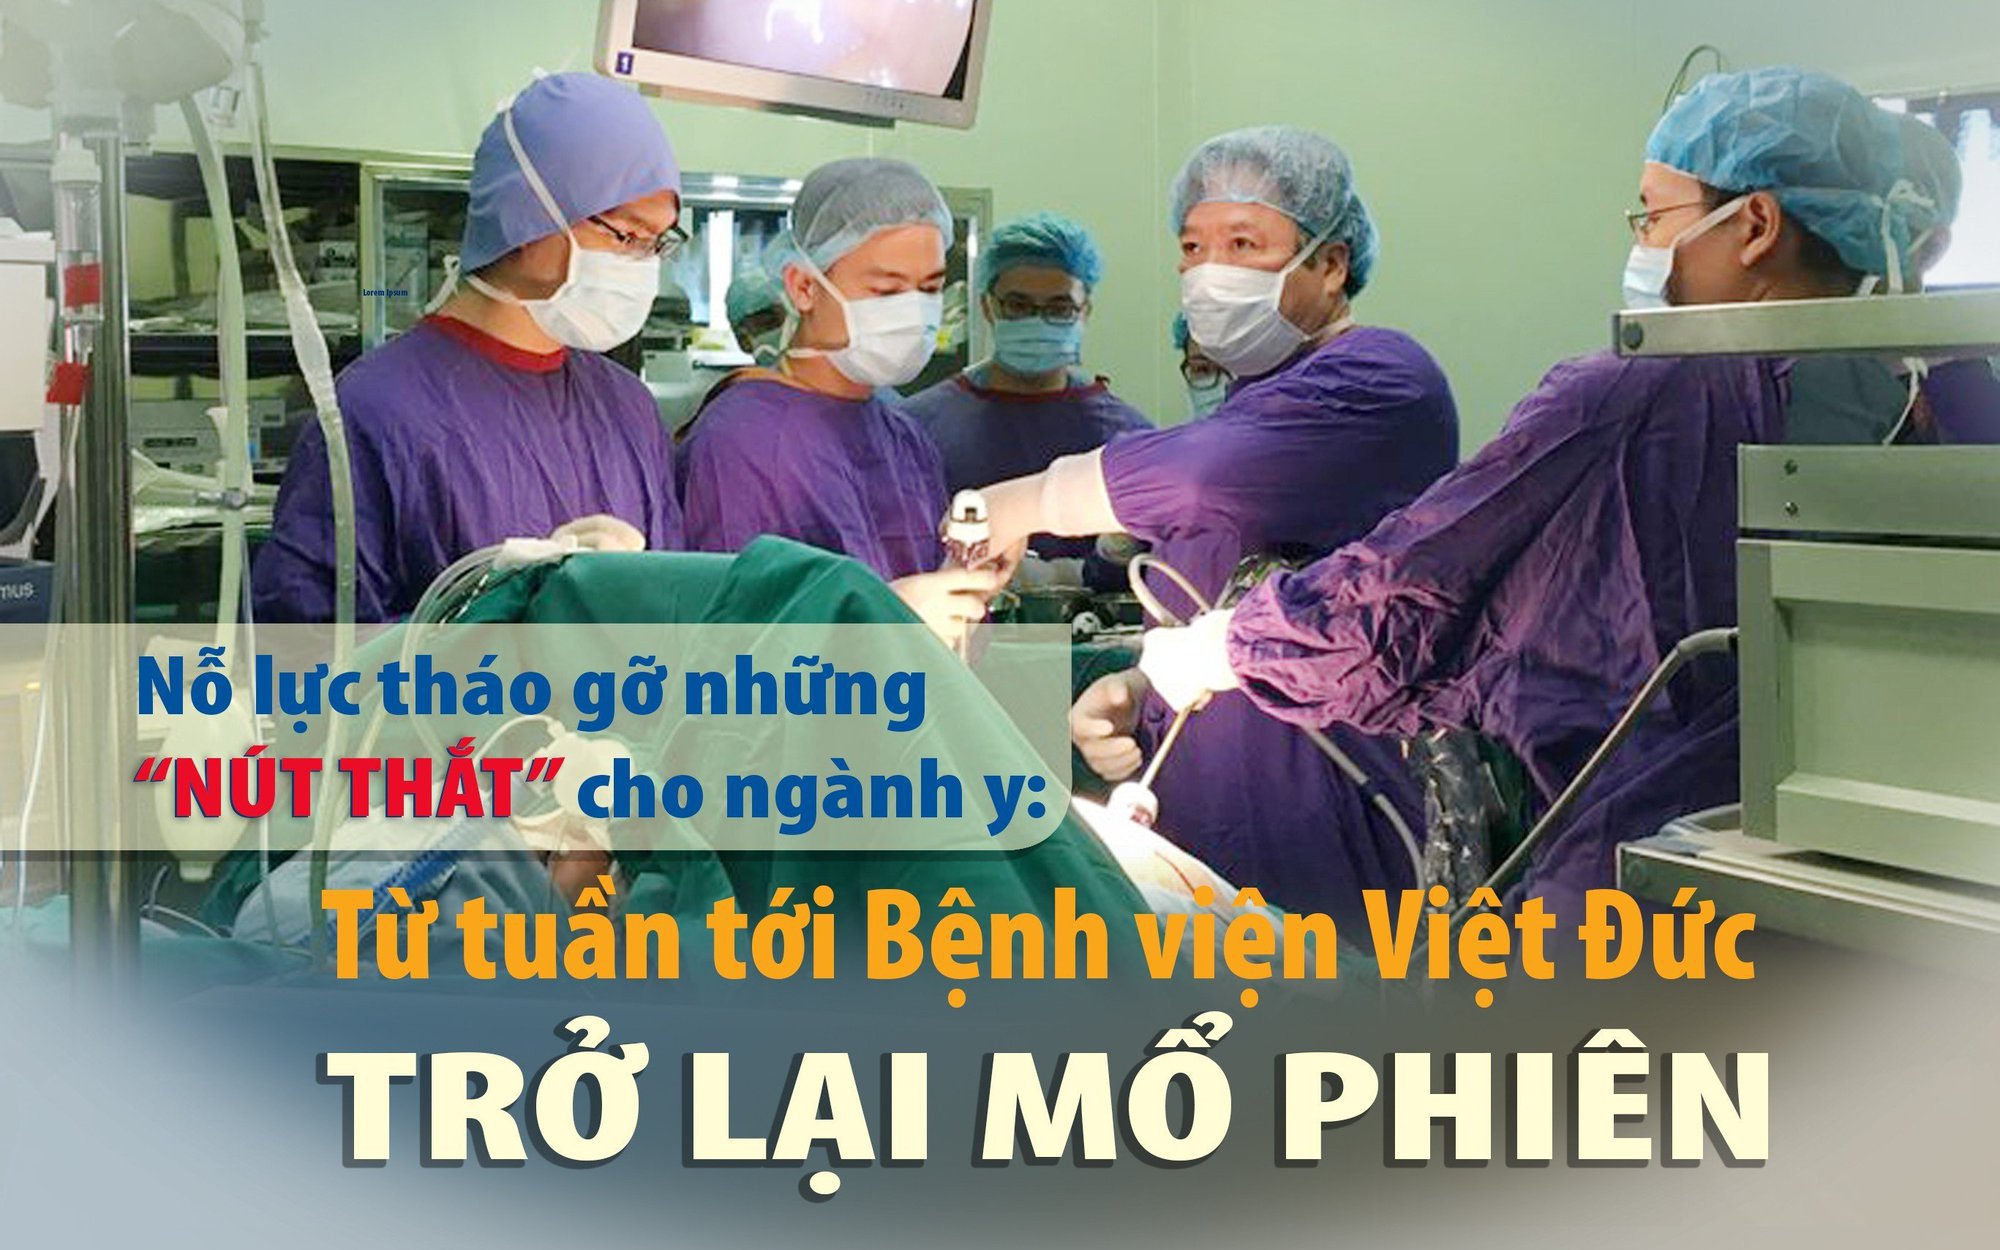 Được gỡ "nút thắt", từ tuần tới Bệnh viện Việt Đức trở lại mổ phiên